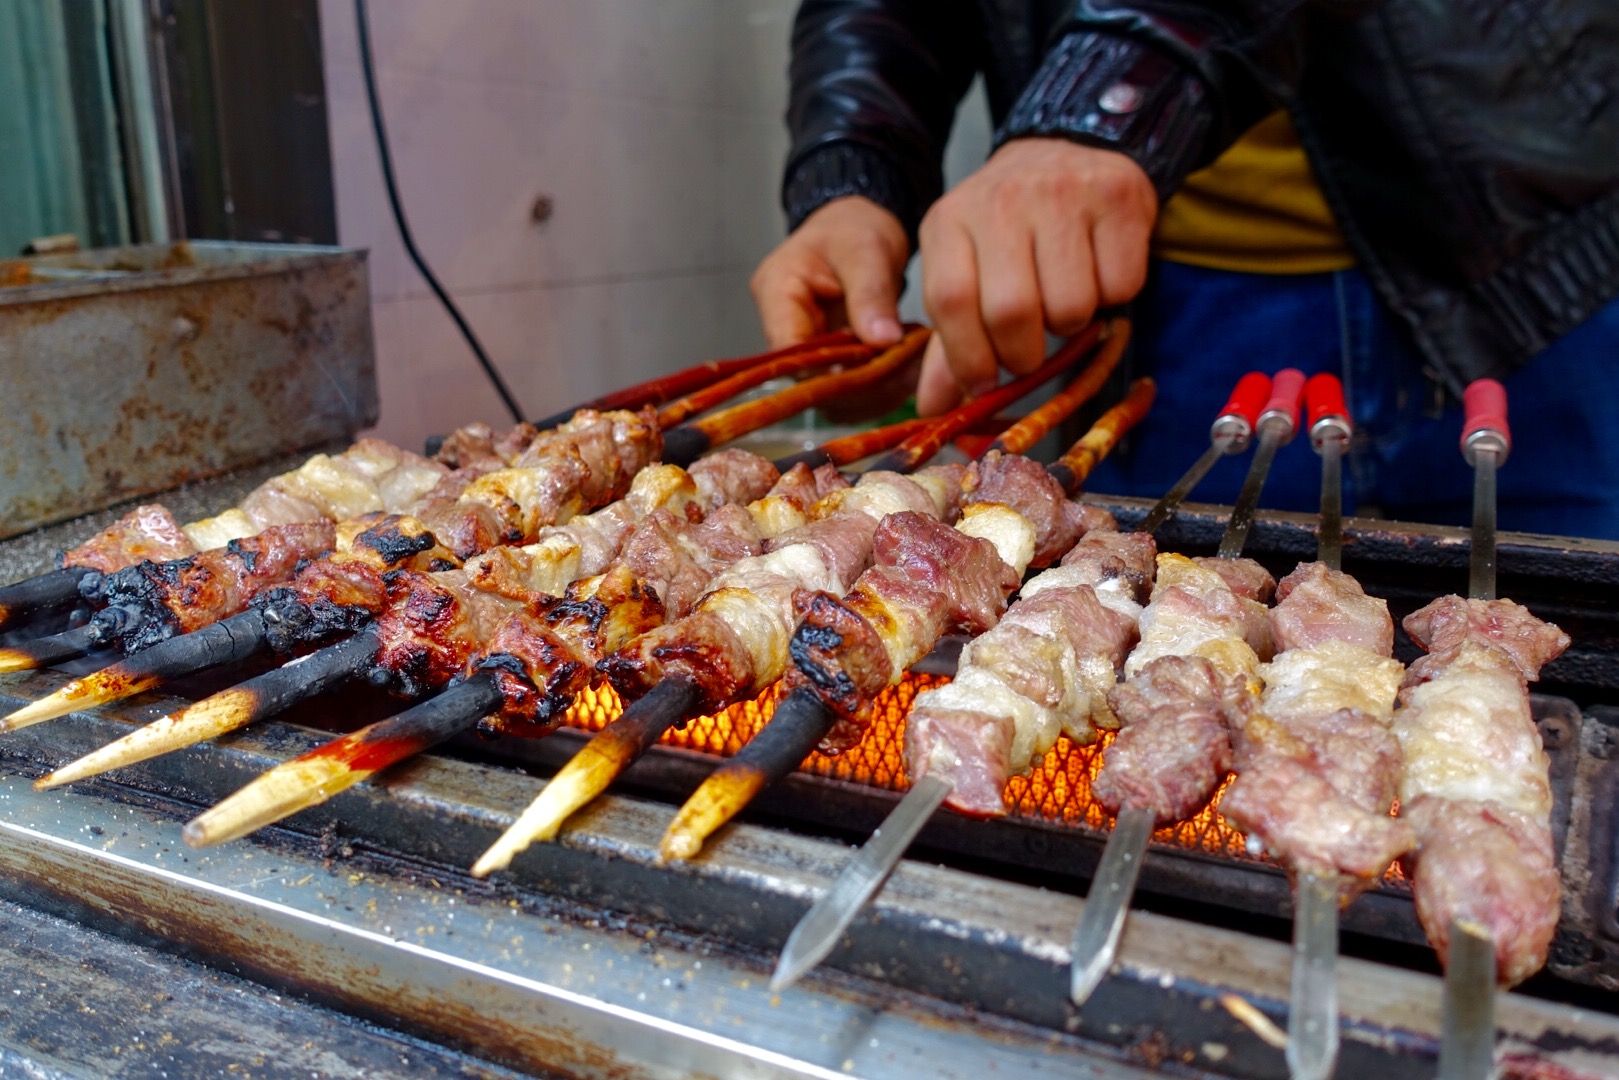 不过,无论走到哪里,新疆的烤羊肉串儿总归是不会让人失望一定